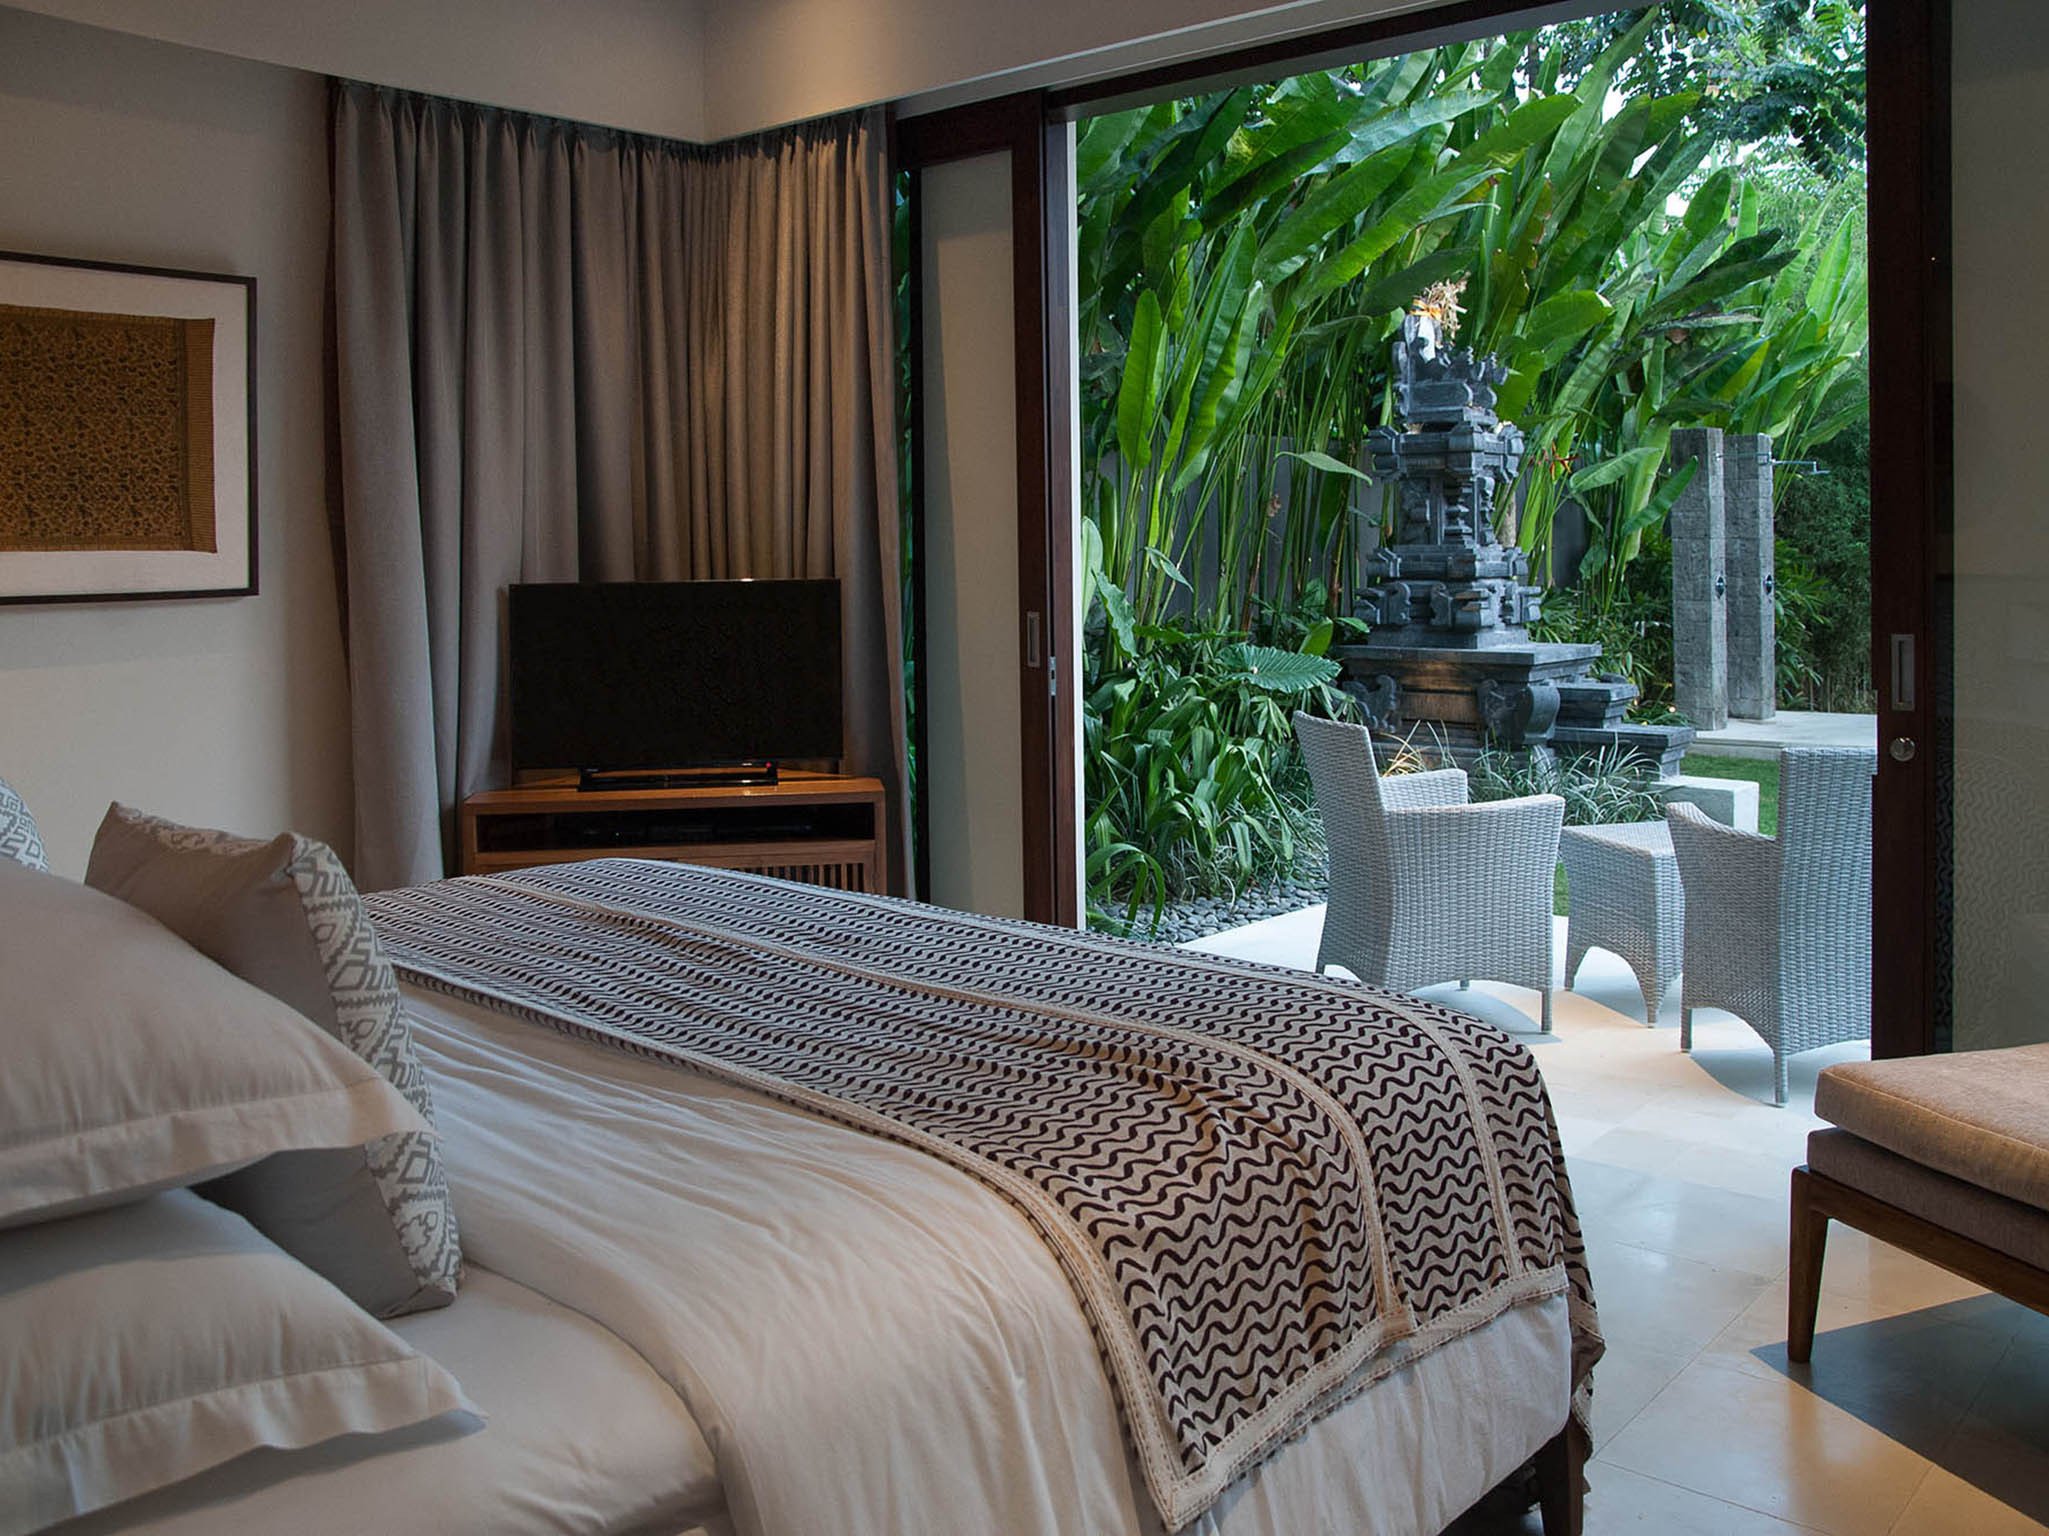 Seseh Beach Villa II - Downstairs guest bedroom - Seseh Beach Villa II, Seseh-Tanah Lot, Bali